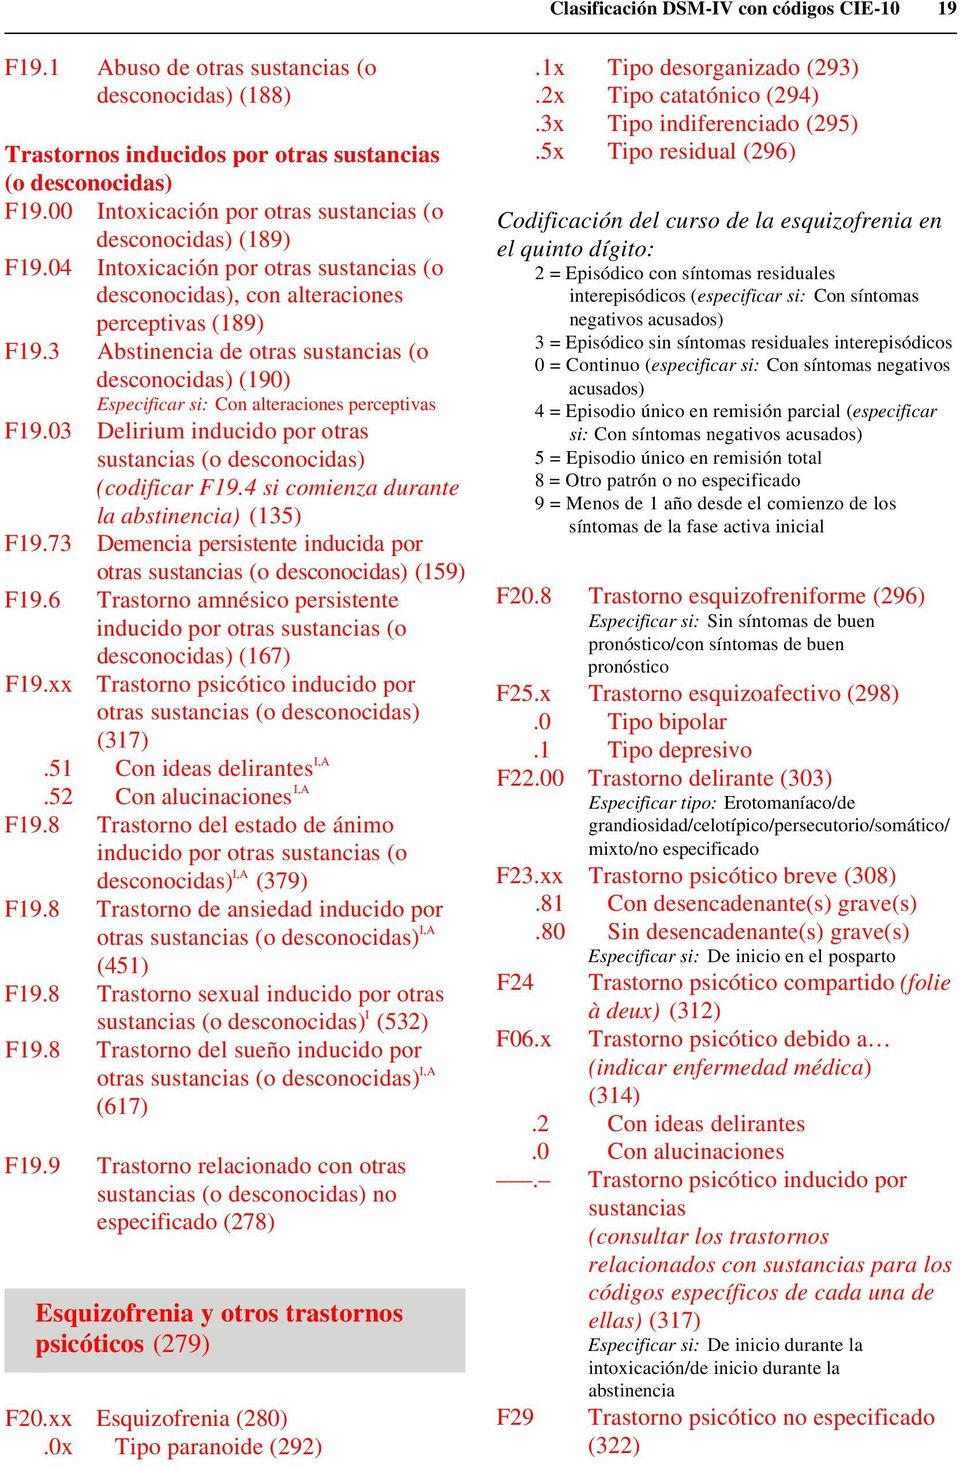 3 Abstinencia de otras sustancias (o desconocidas) (190) Especificar si: Con alteraciones perceptivas F19.03 Delirium inducido por otras sustancias (o desconocidas) (codificar F19.